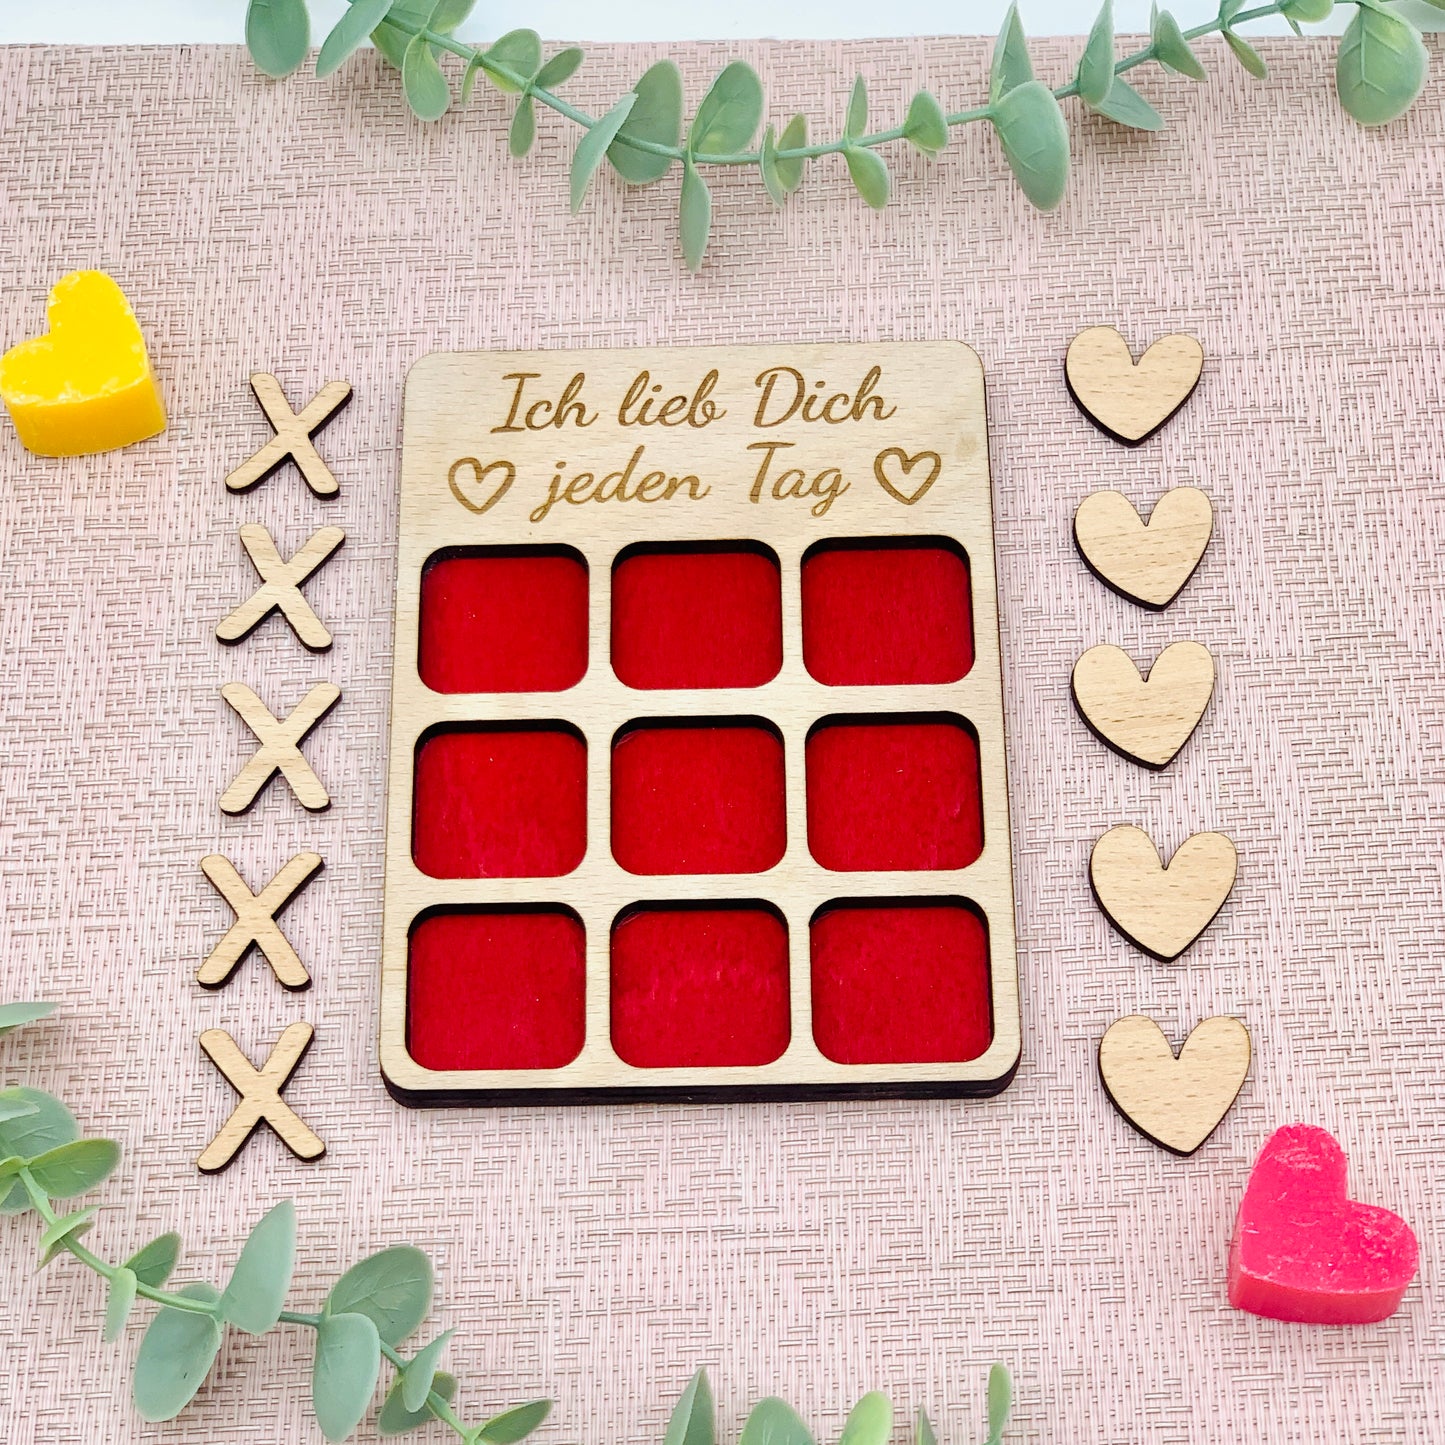 Geschenk Valentinstag - 3 Gewinnt Holz - Tic Tac Toe Holz Brettspiel - Brettspiel personalisiert - Reisespiel -  Spiel für Verliebte